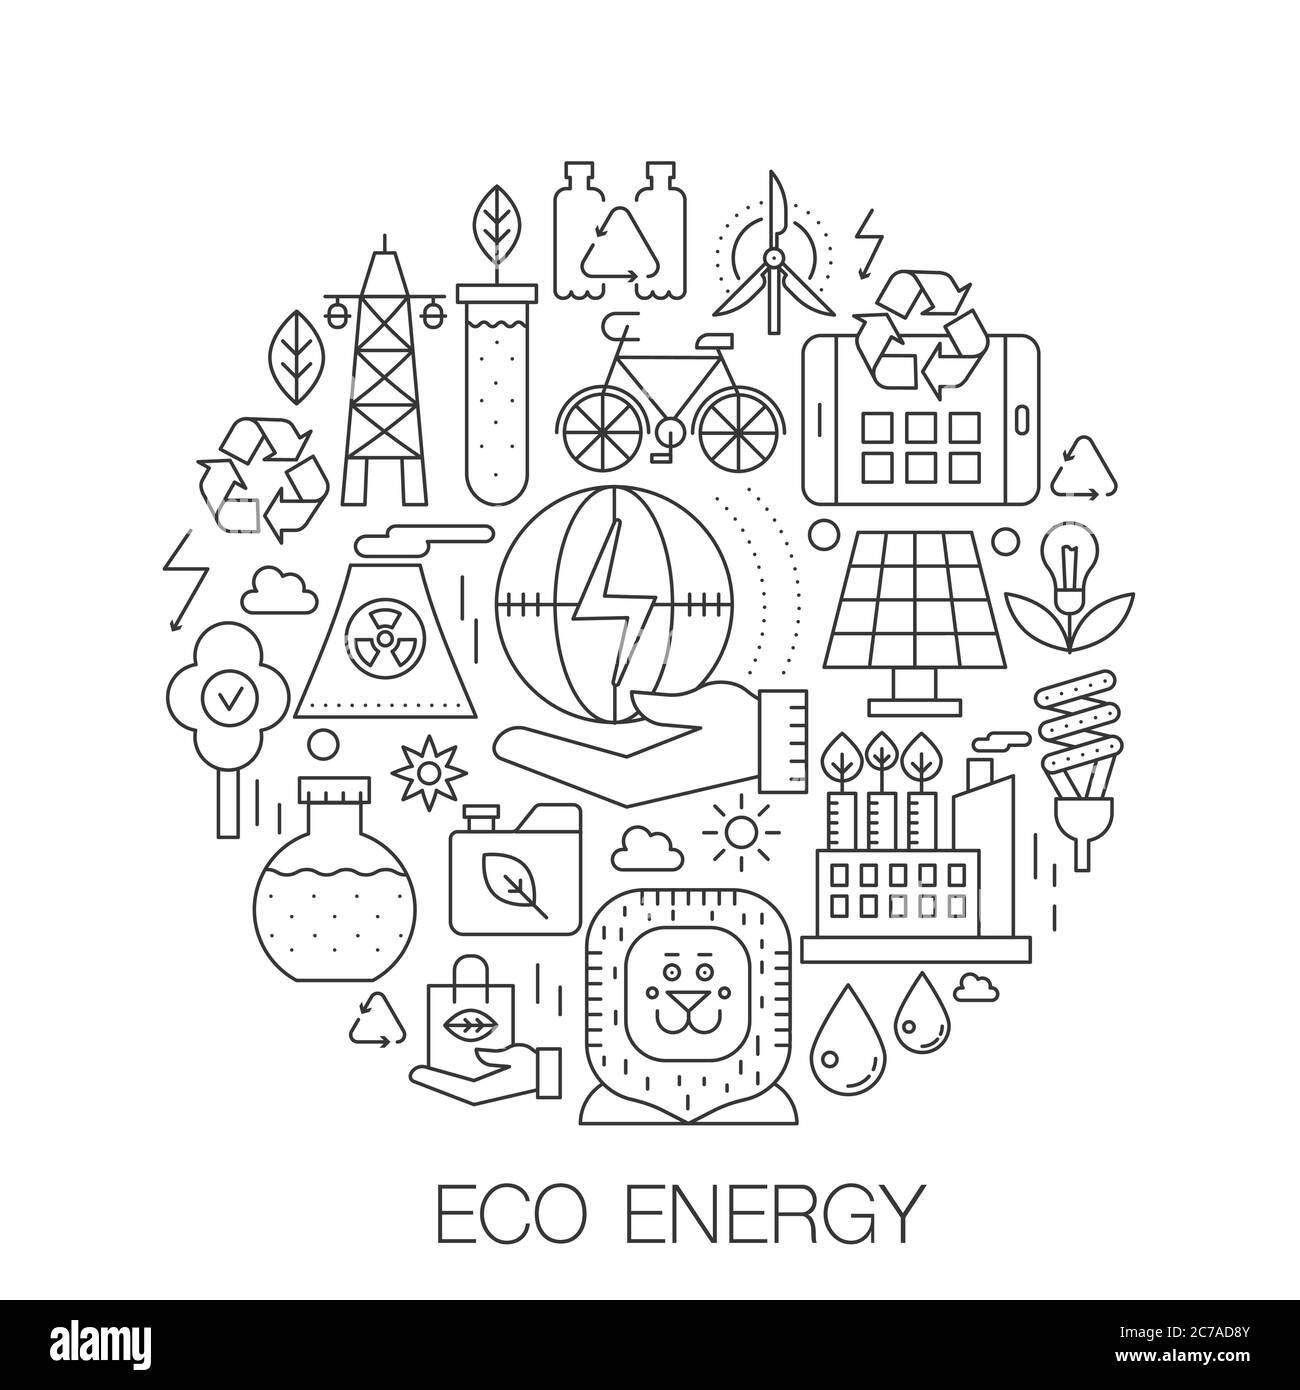 Eco Energy im Kreis - Konzept Liniendarstellung für Deckel, Emblem, Abzeichen. Grüne energgy dünne Linie Schlaganfall Symbole Stock Vektor